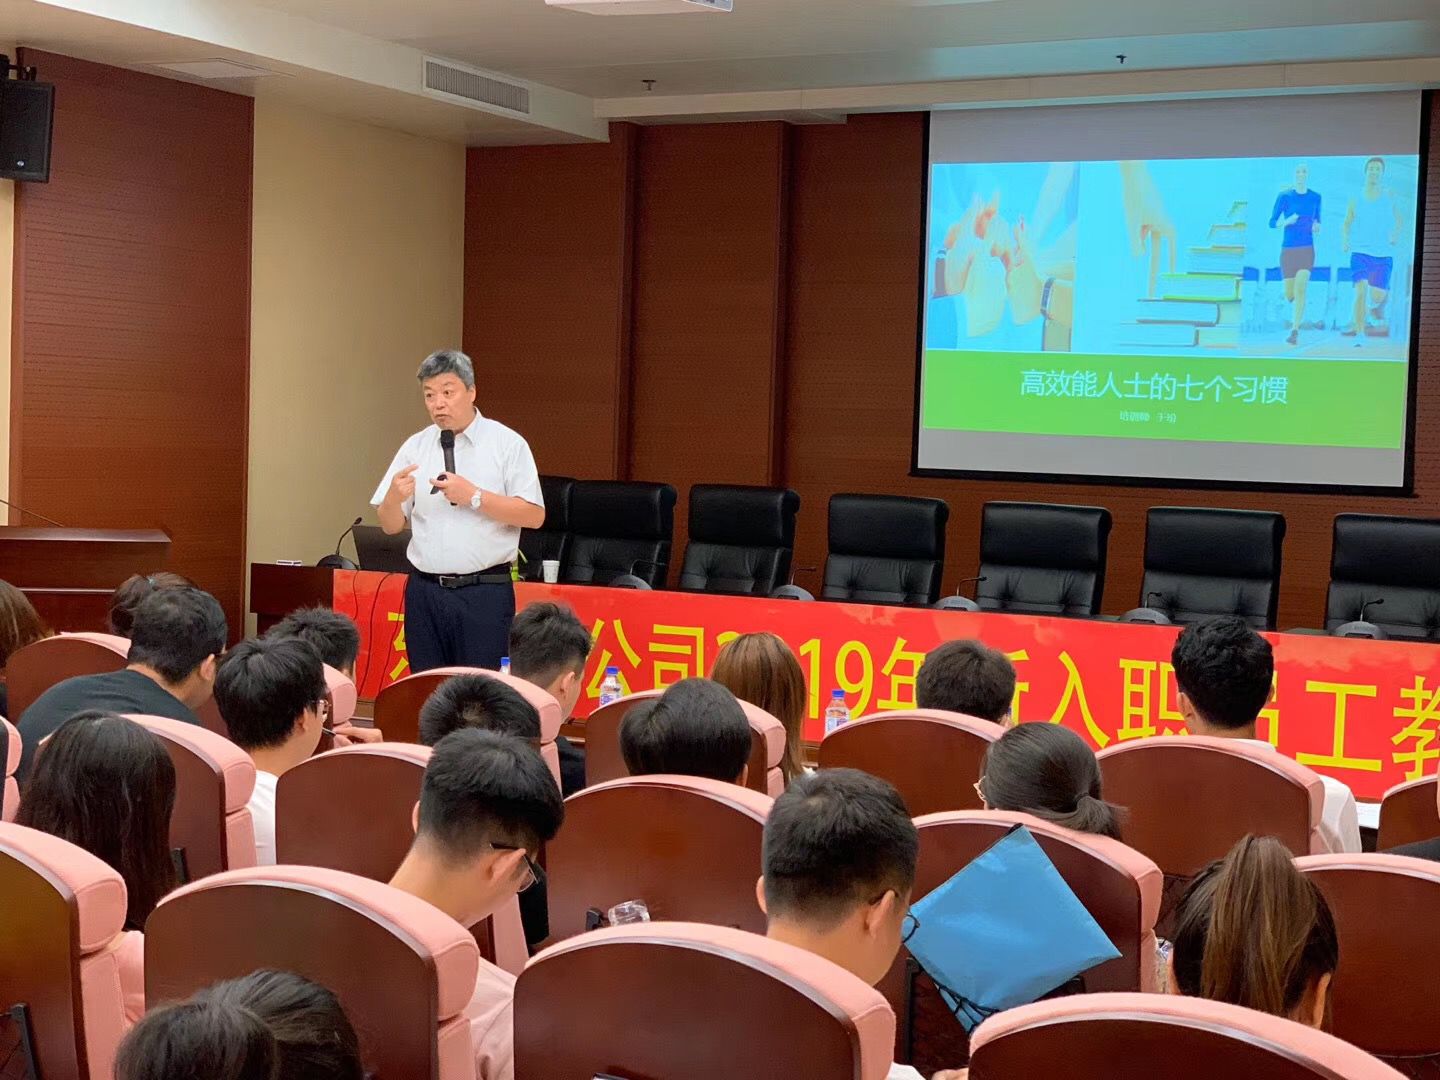 中国电力工程顾问集团东北电力设计院有限公司《高效能人士的七个习惯》培训